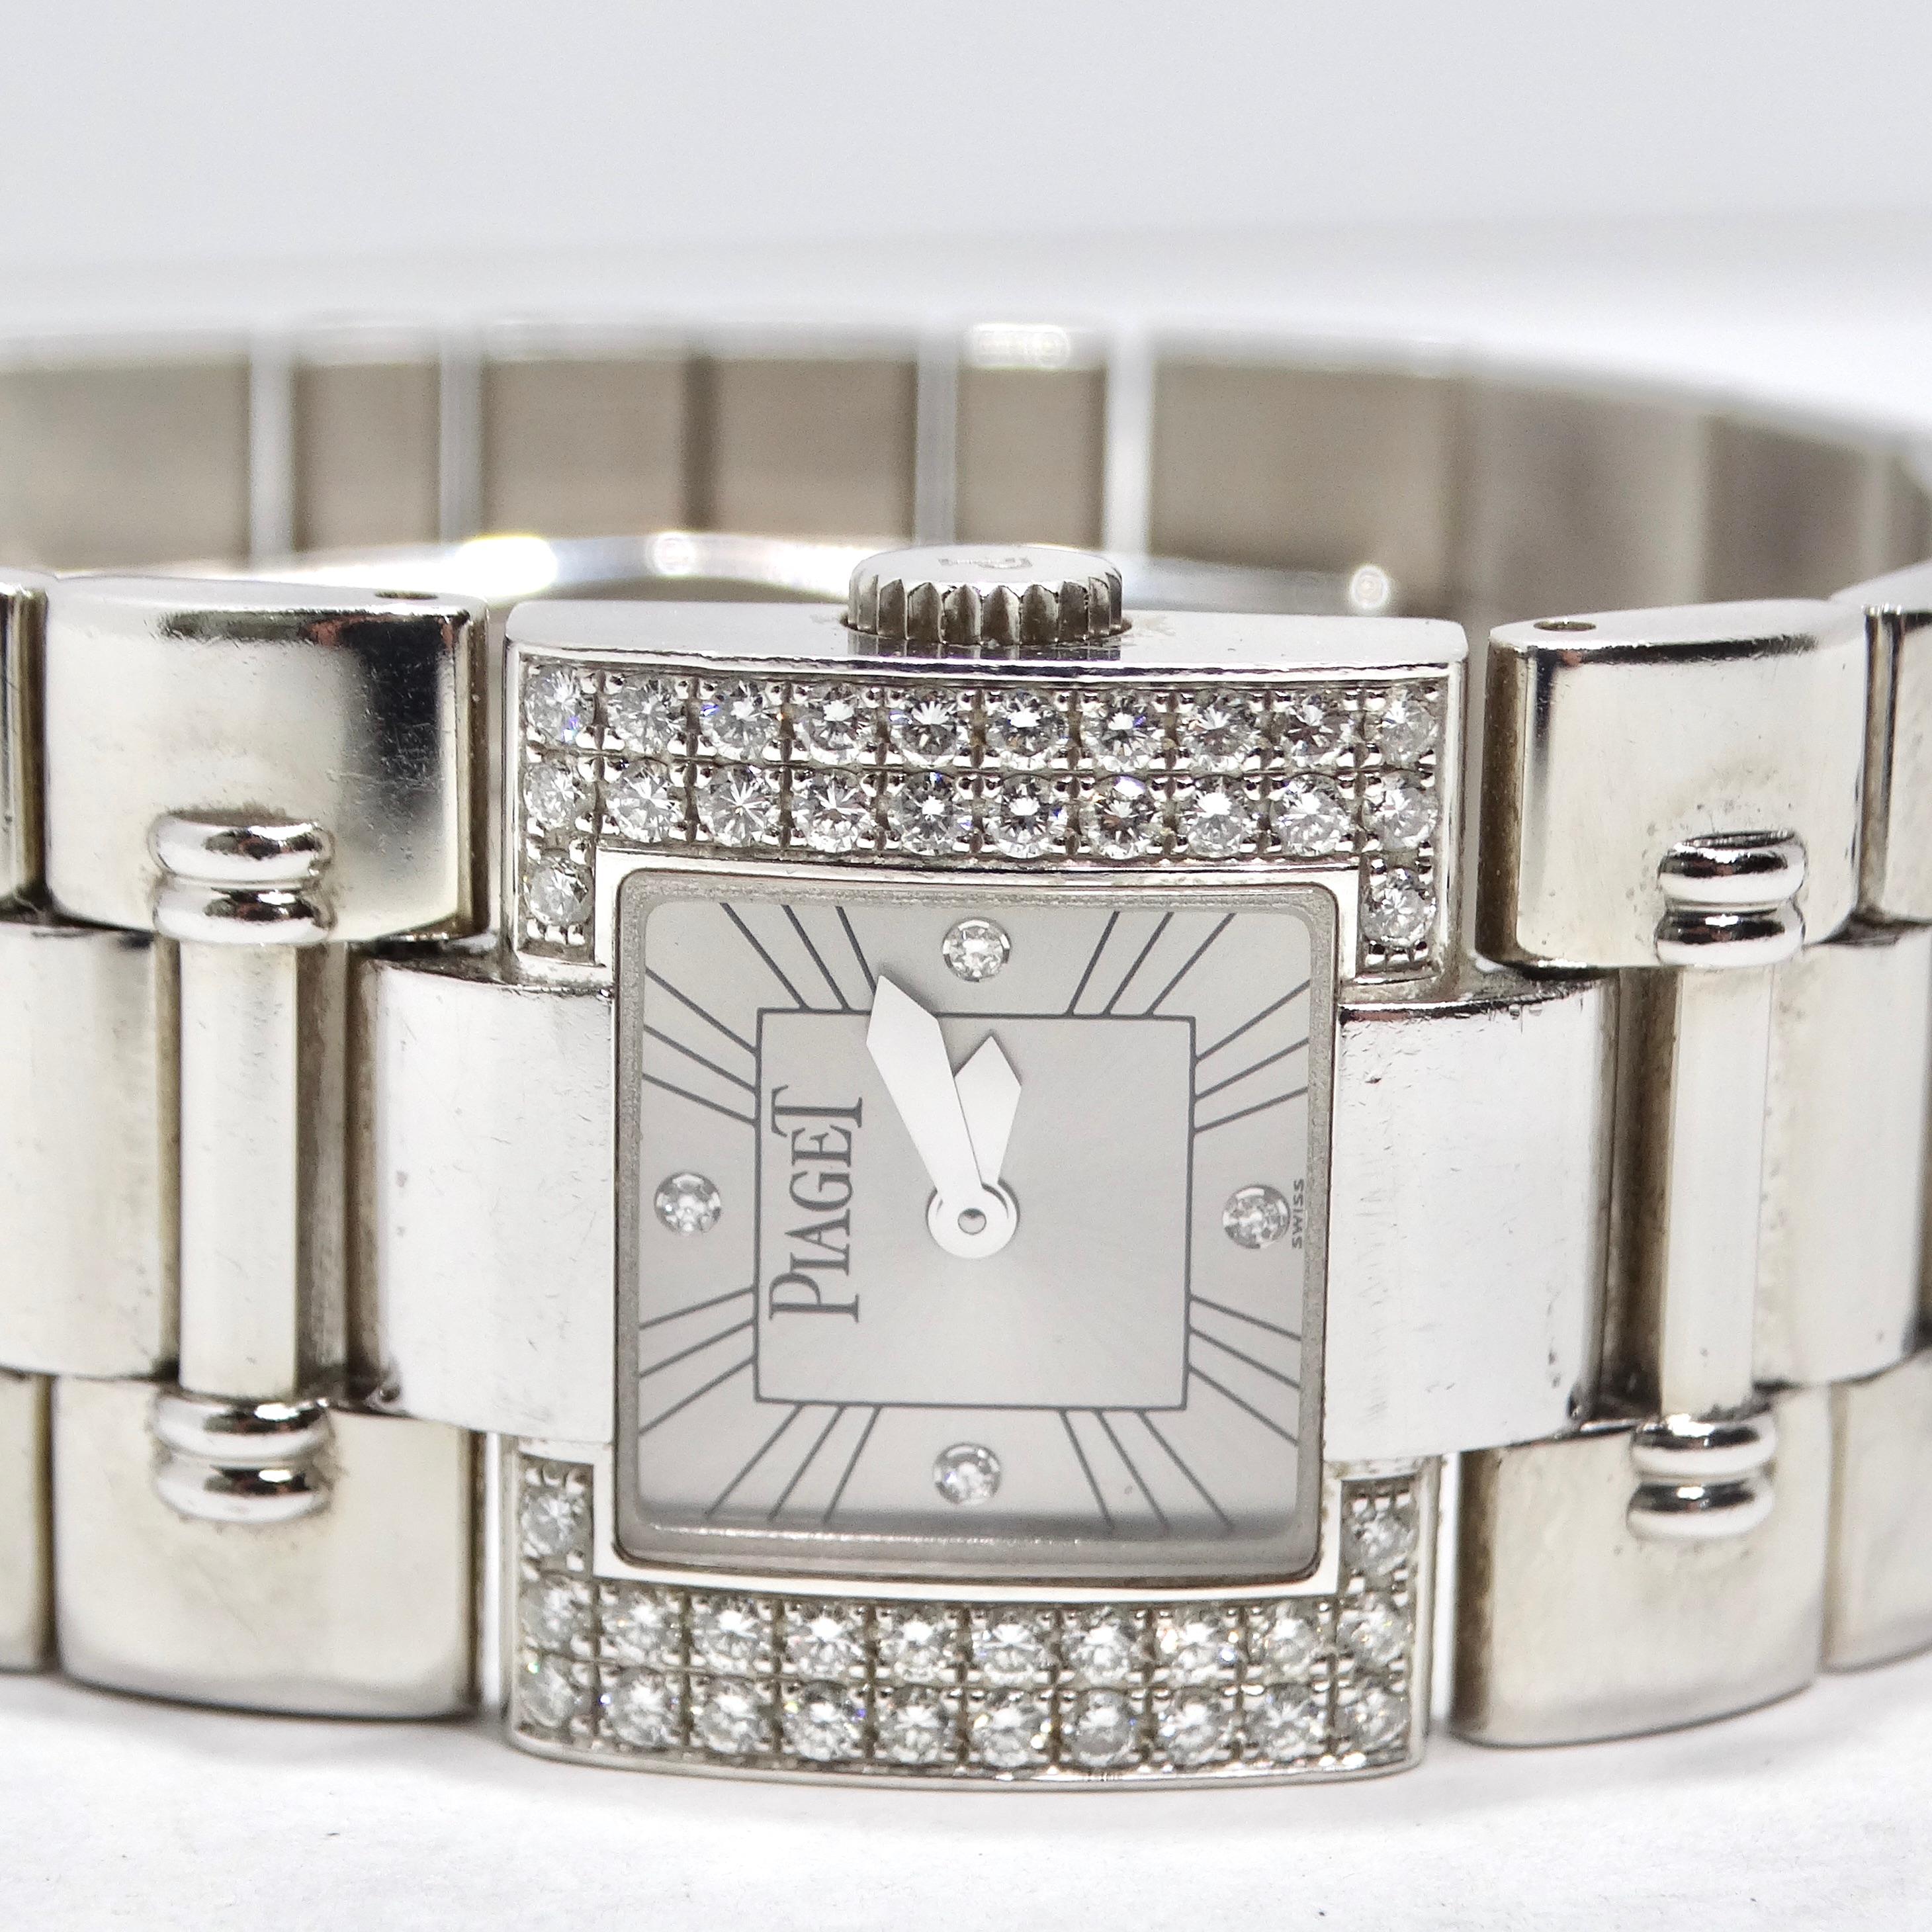 Verpassen Sie nicht die Piaget Square Dancer Diamond Bezel White Gold Watch, ein wahres Meisterwerk der Uhrmacherkunst und ein Symbol des Luxus. Diese aus Weißgold gefertigte Uhr verkörpert zeitlose Eleganz und Raffinesse. Ihr klassisches Design